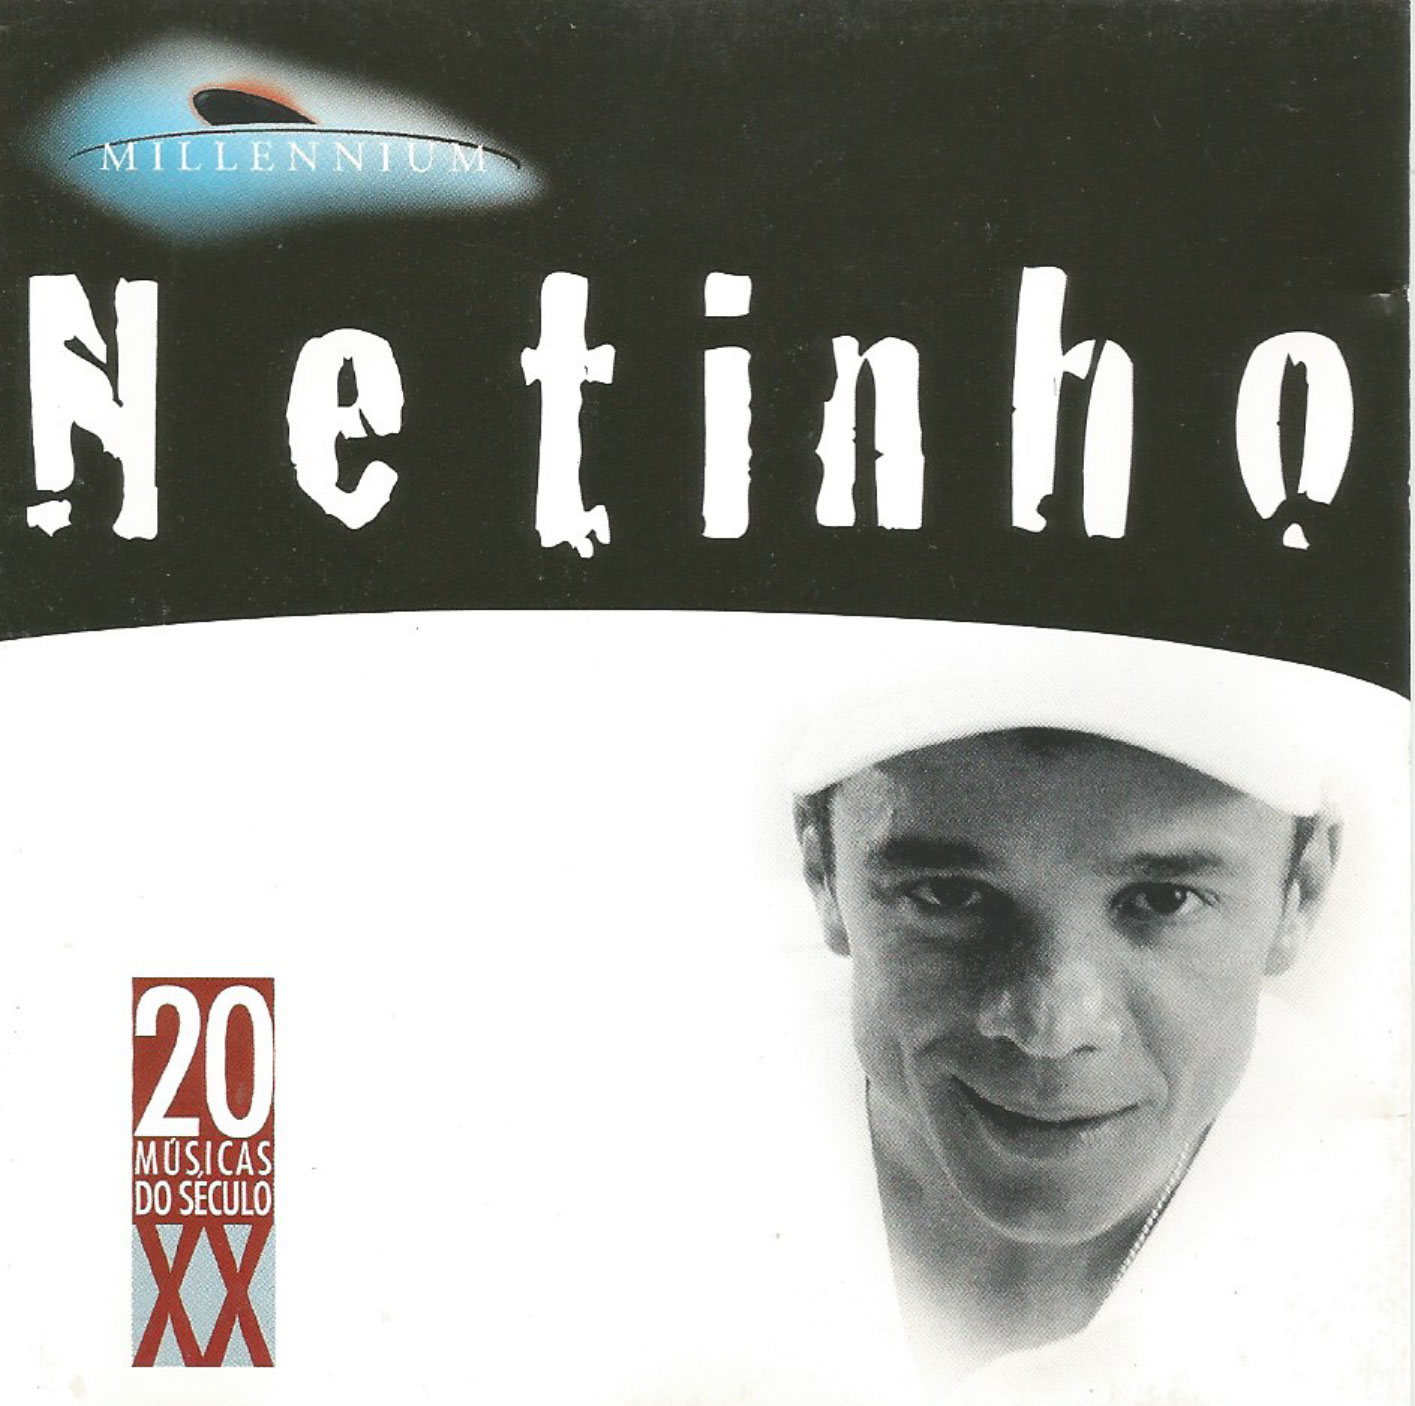 Millennium Netinho